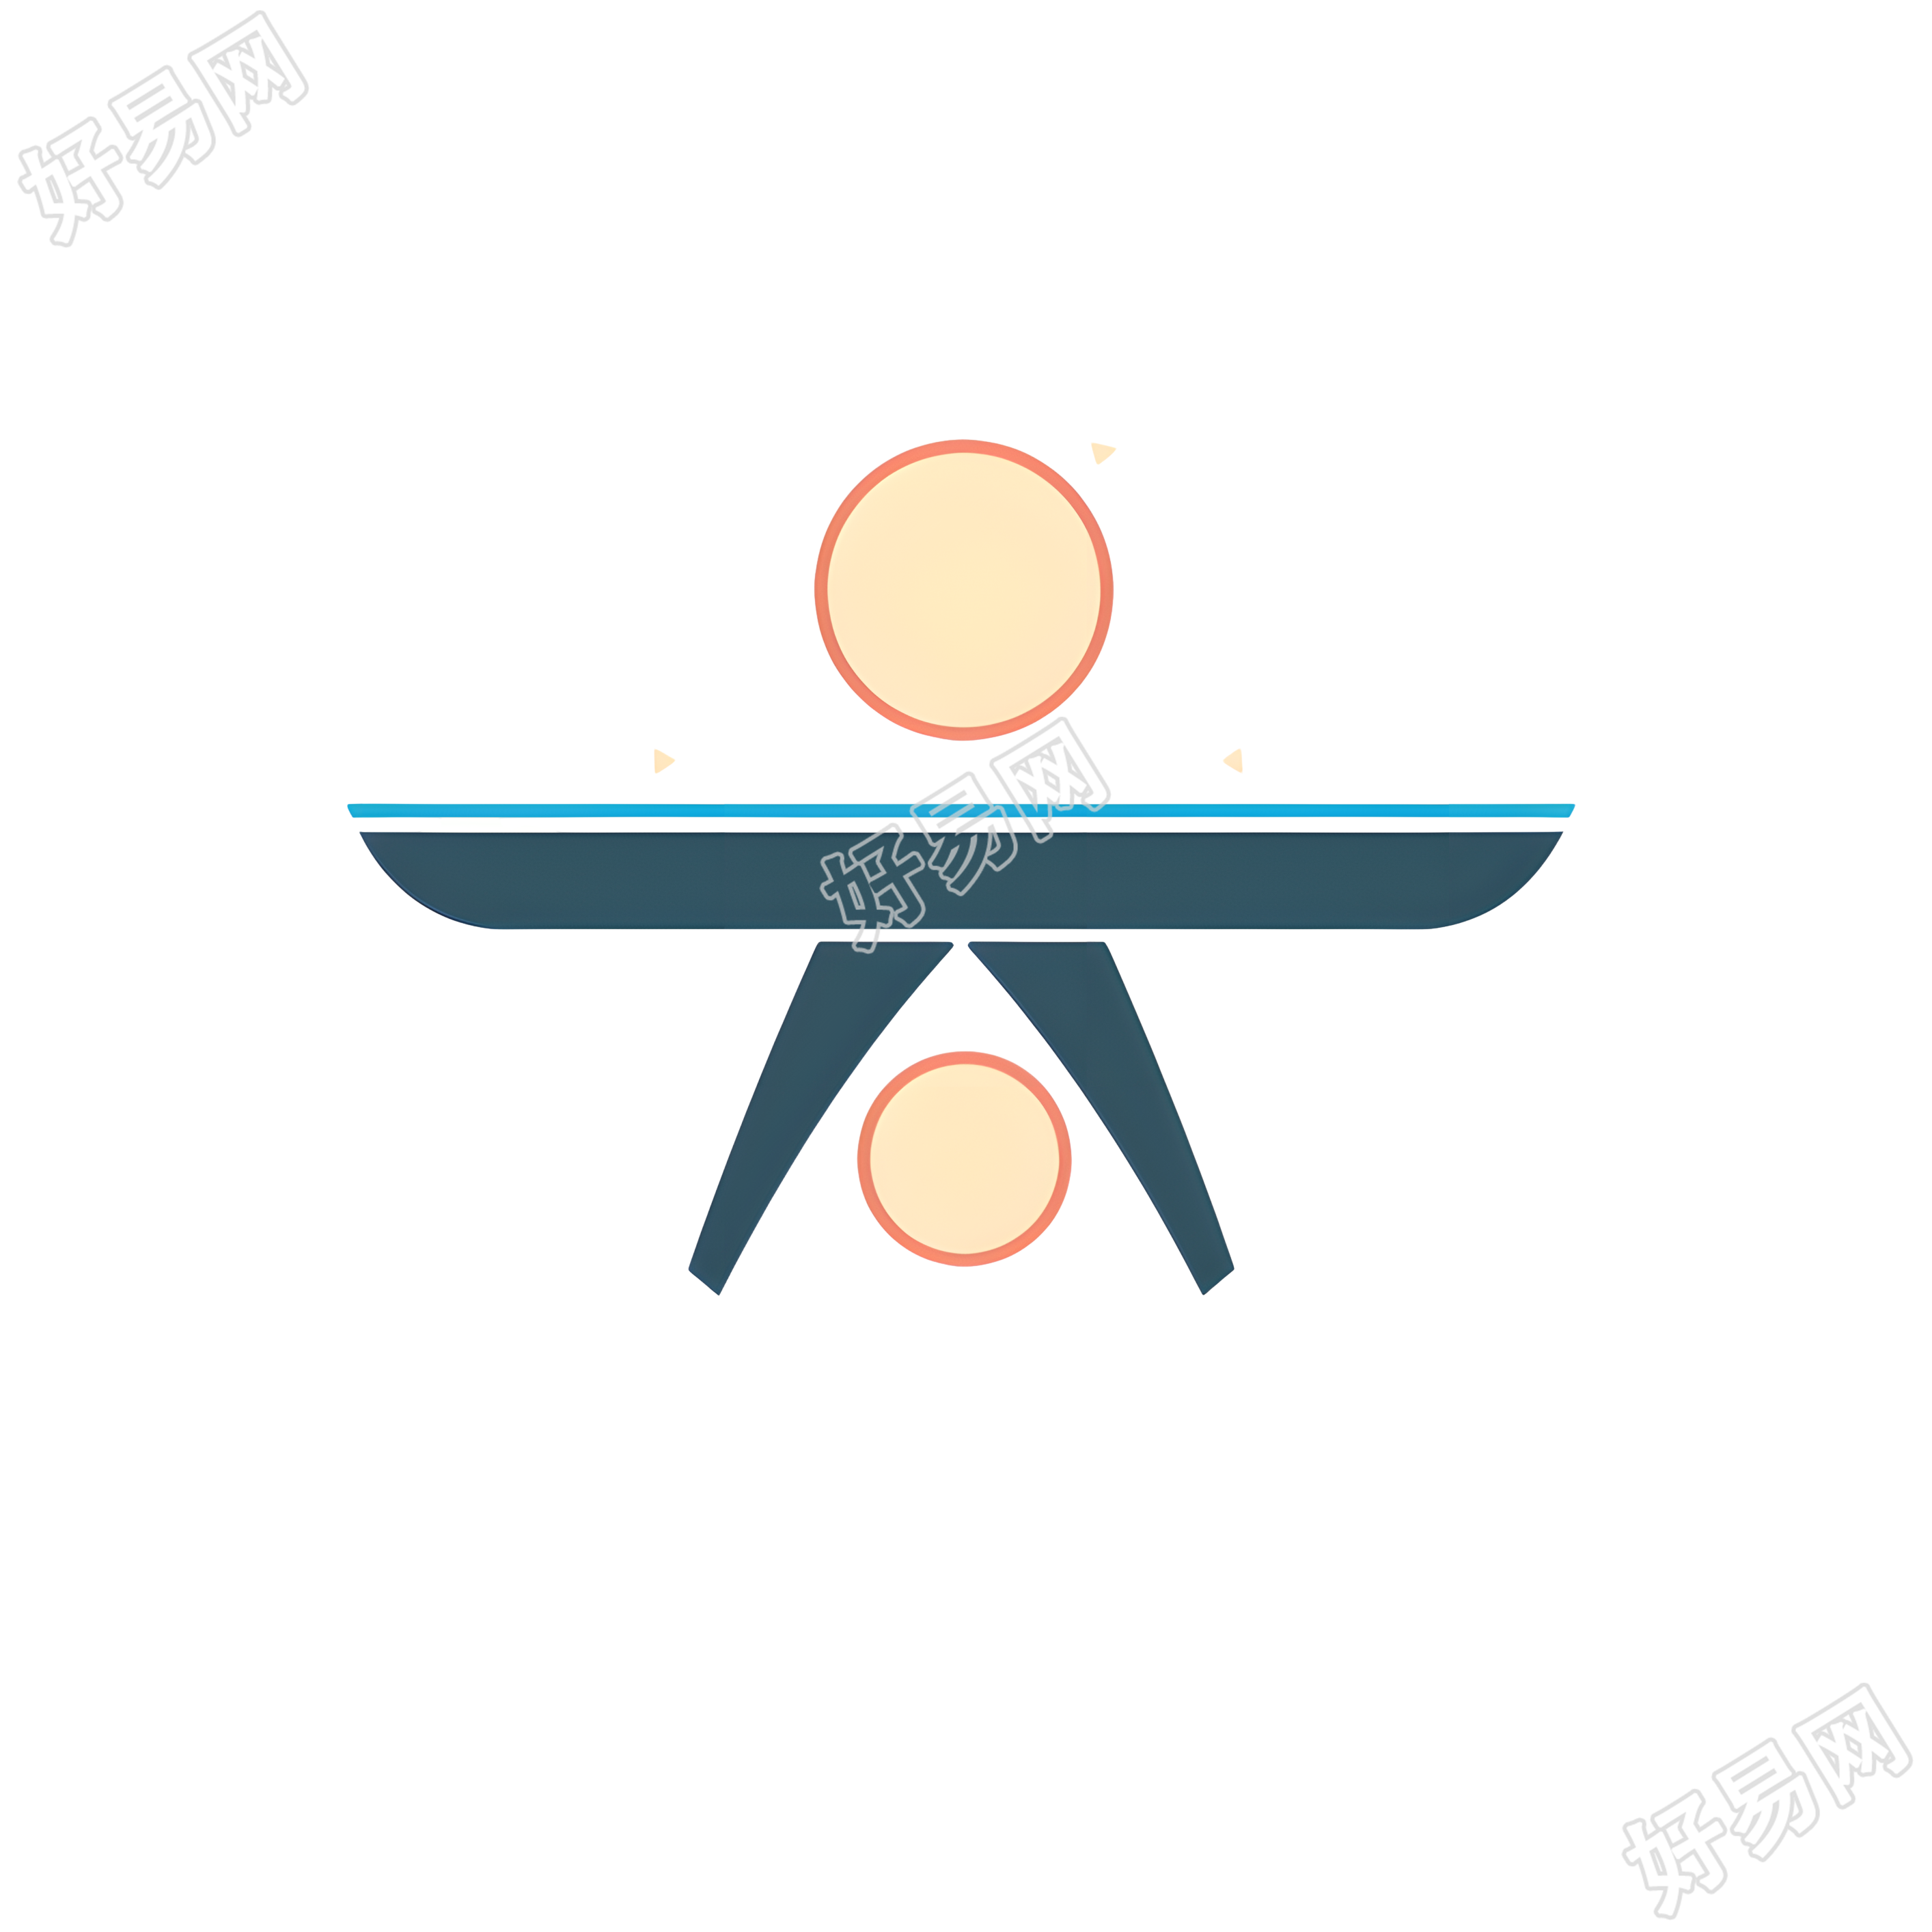 乒乓球logo插画设计素材